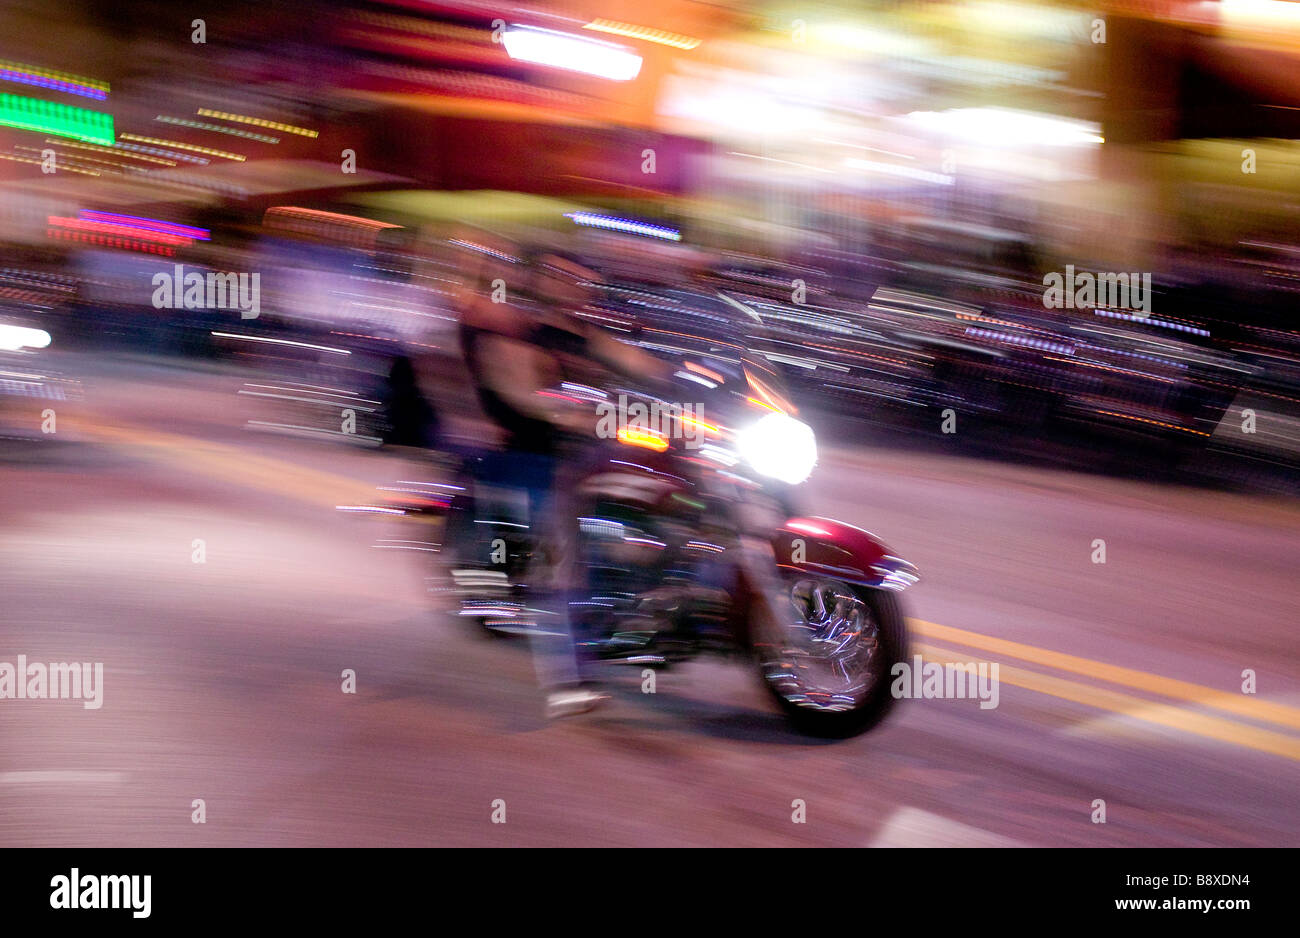 Main St Daytona Beach bike at night Stock Photo